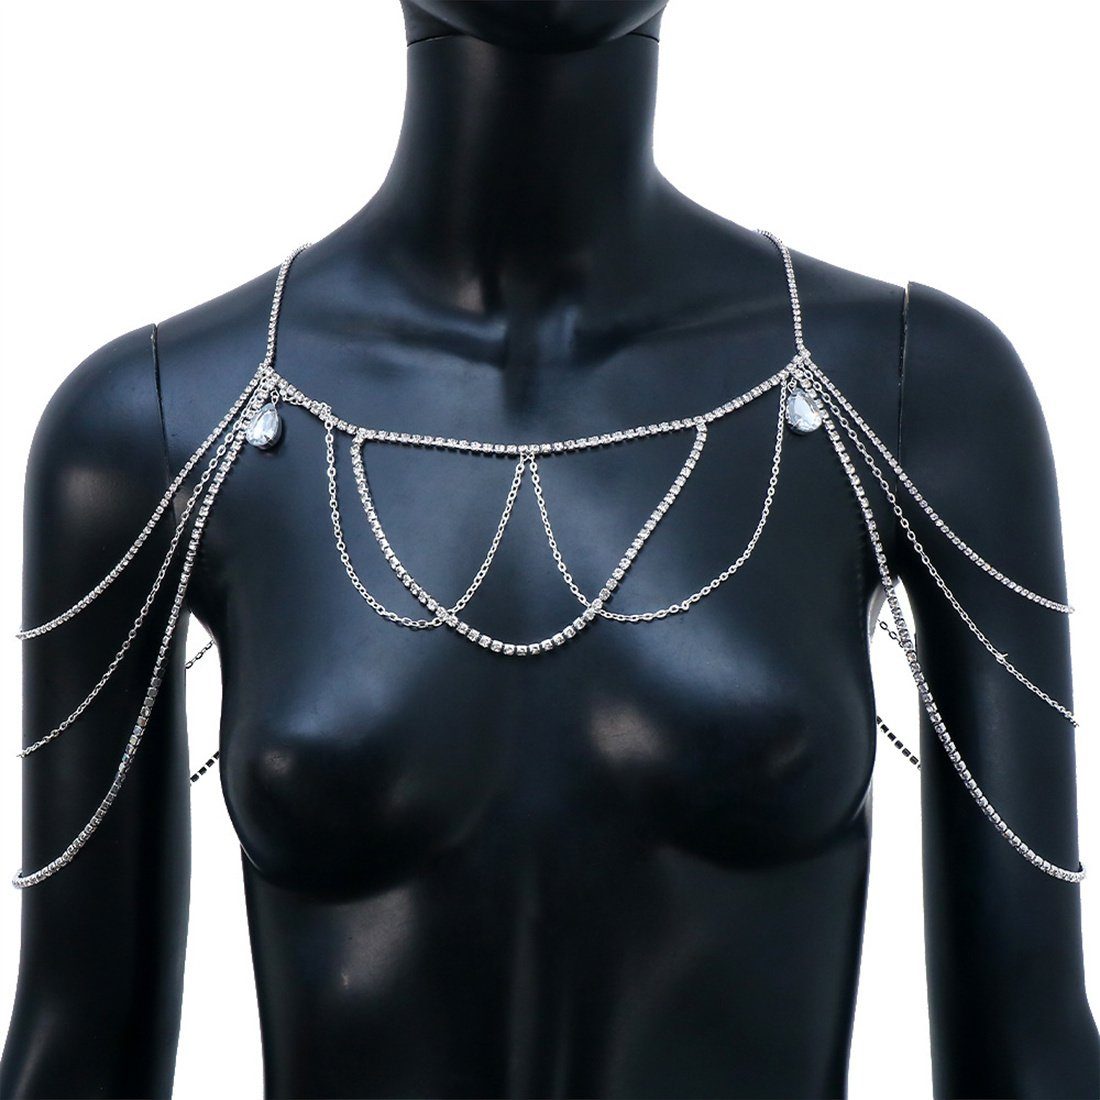 DÖRÖY Charm-Kette mehrlagige Bräute Quasten-Schulterkette, Strass-Körperkette Silber für